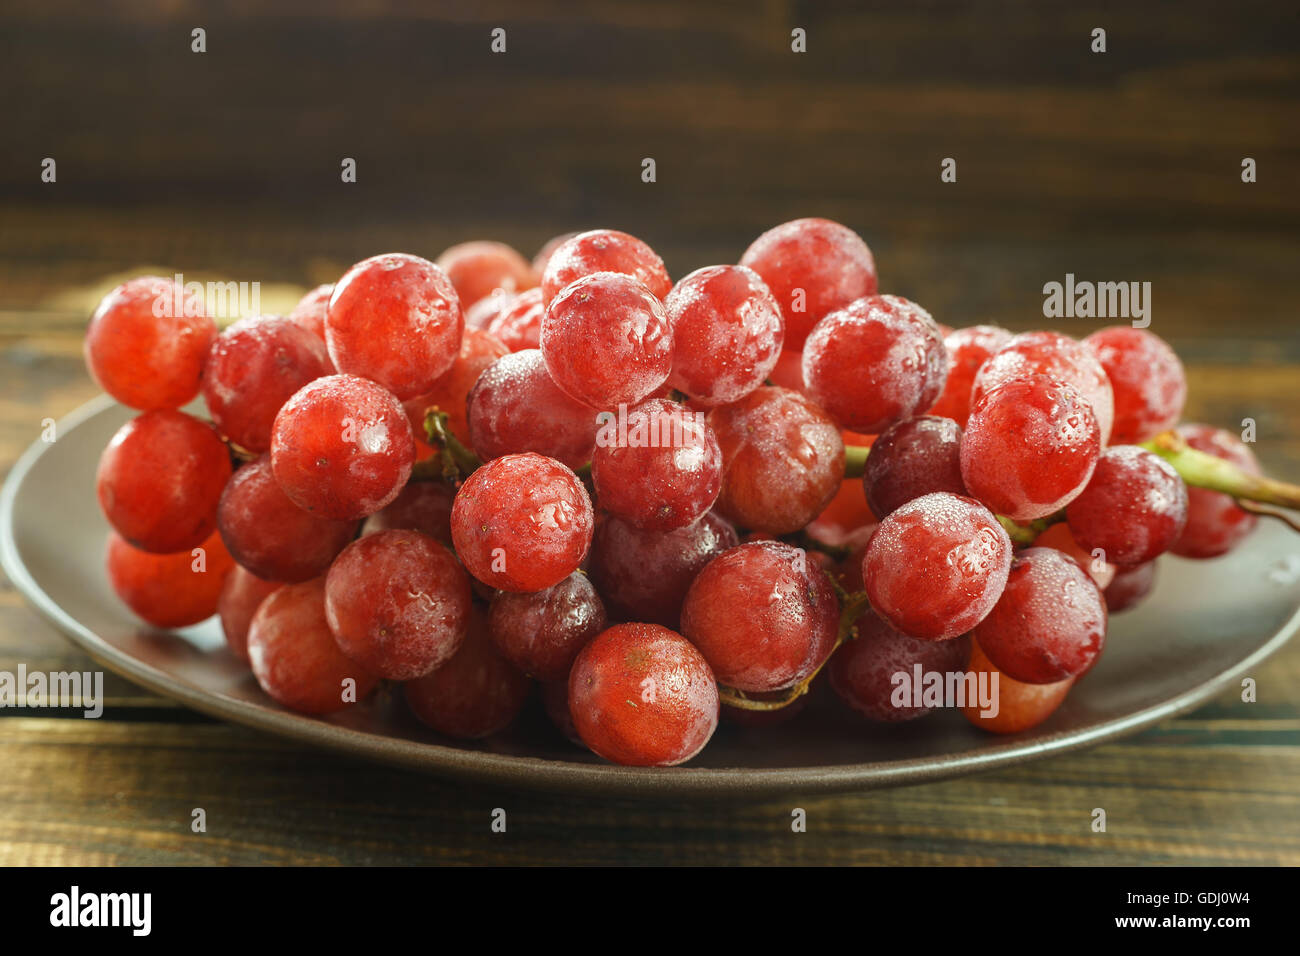 Grappolo di uva rossa su sfondo scuro Foto Stock